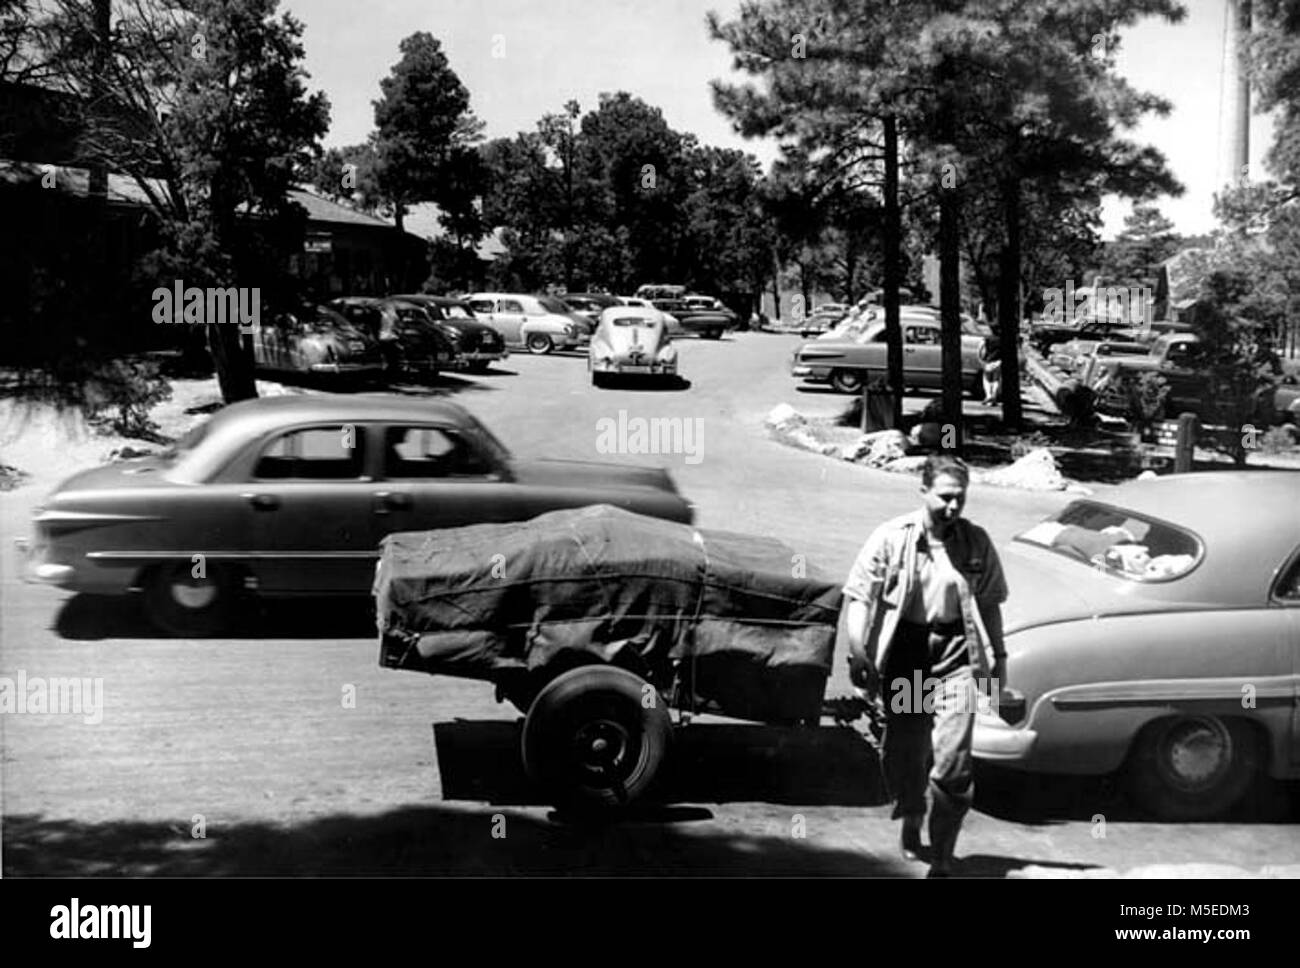 Grand Canyon- El tráfico pesado en la Post Office muestra el hacinamiento y el tráfico pesado por la oficina de correos, GENERAL STORE & PARK AREA DE ADMINISTRACIÓN. Operaciones (Ranger) Aug 1951 Foto de stock